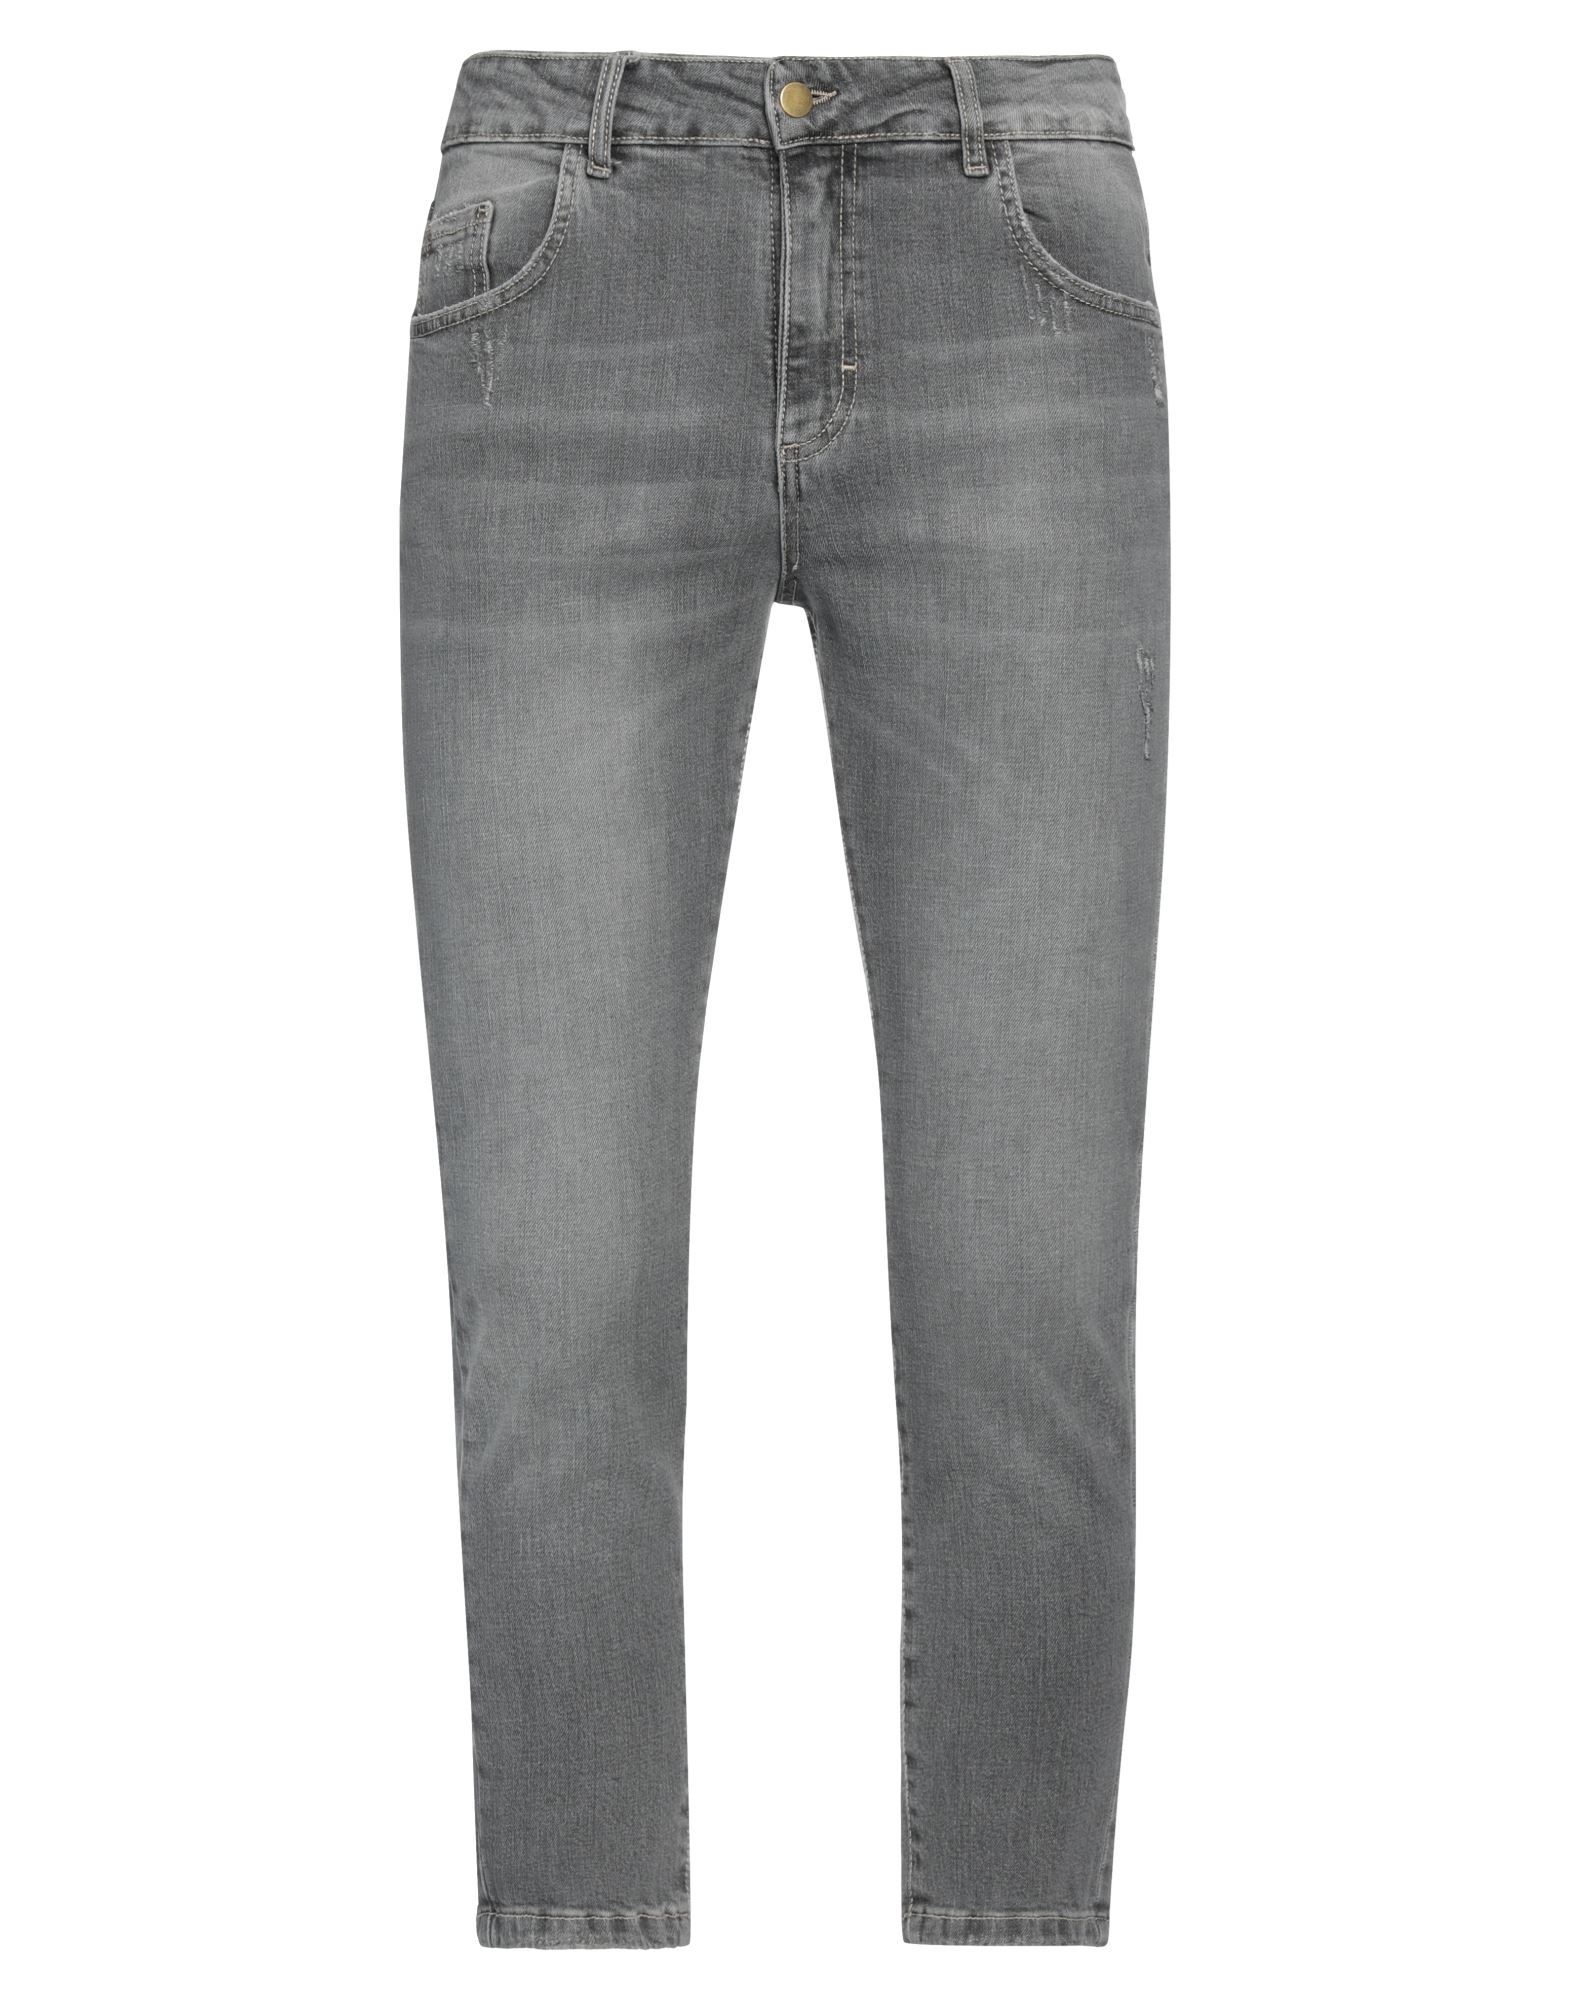 Beaucoup .., Man Jeans Grey Size 28 Textile Fibers